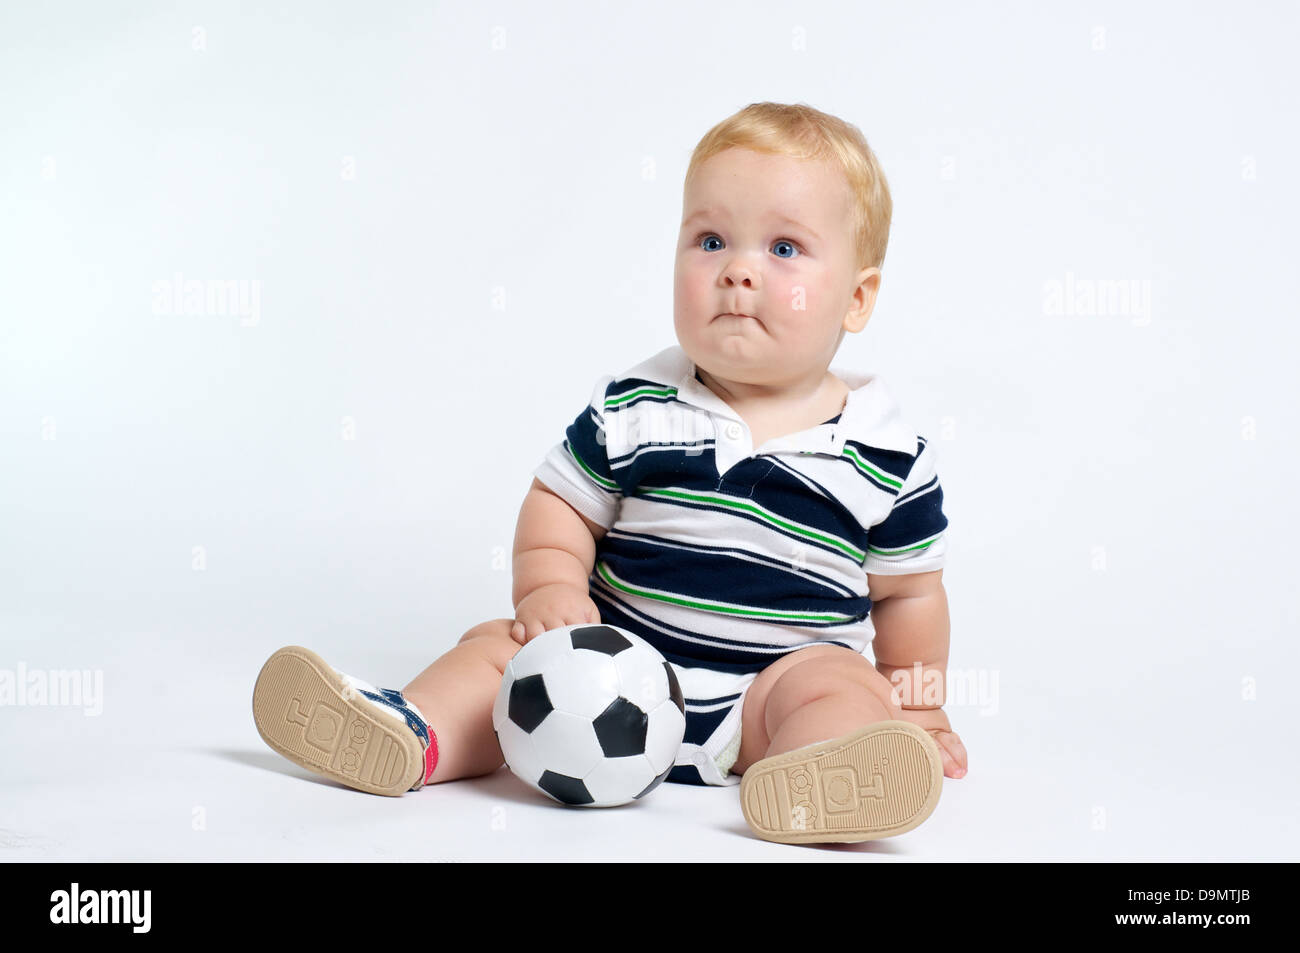 Cute blonde aux yeux bleus de bébé jouer avec ballon de soccer Banque D'Images